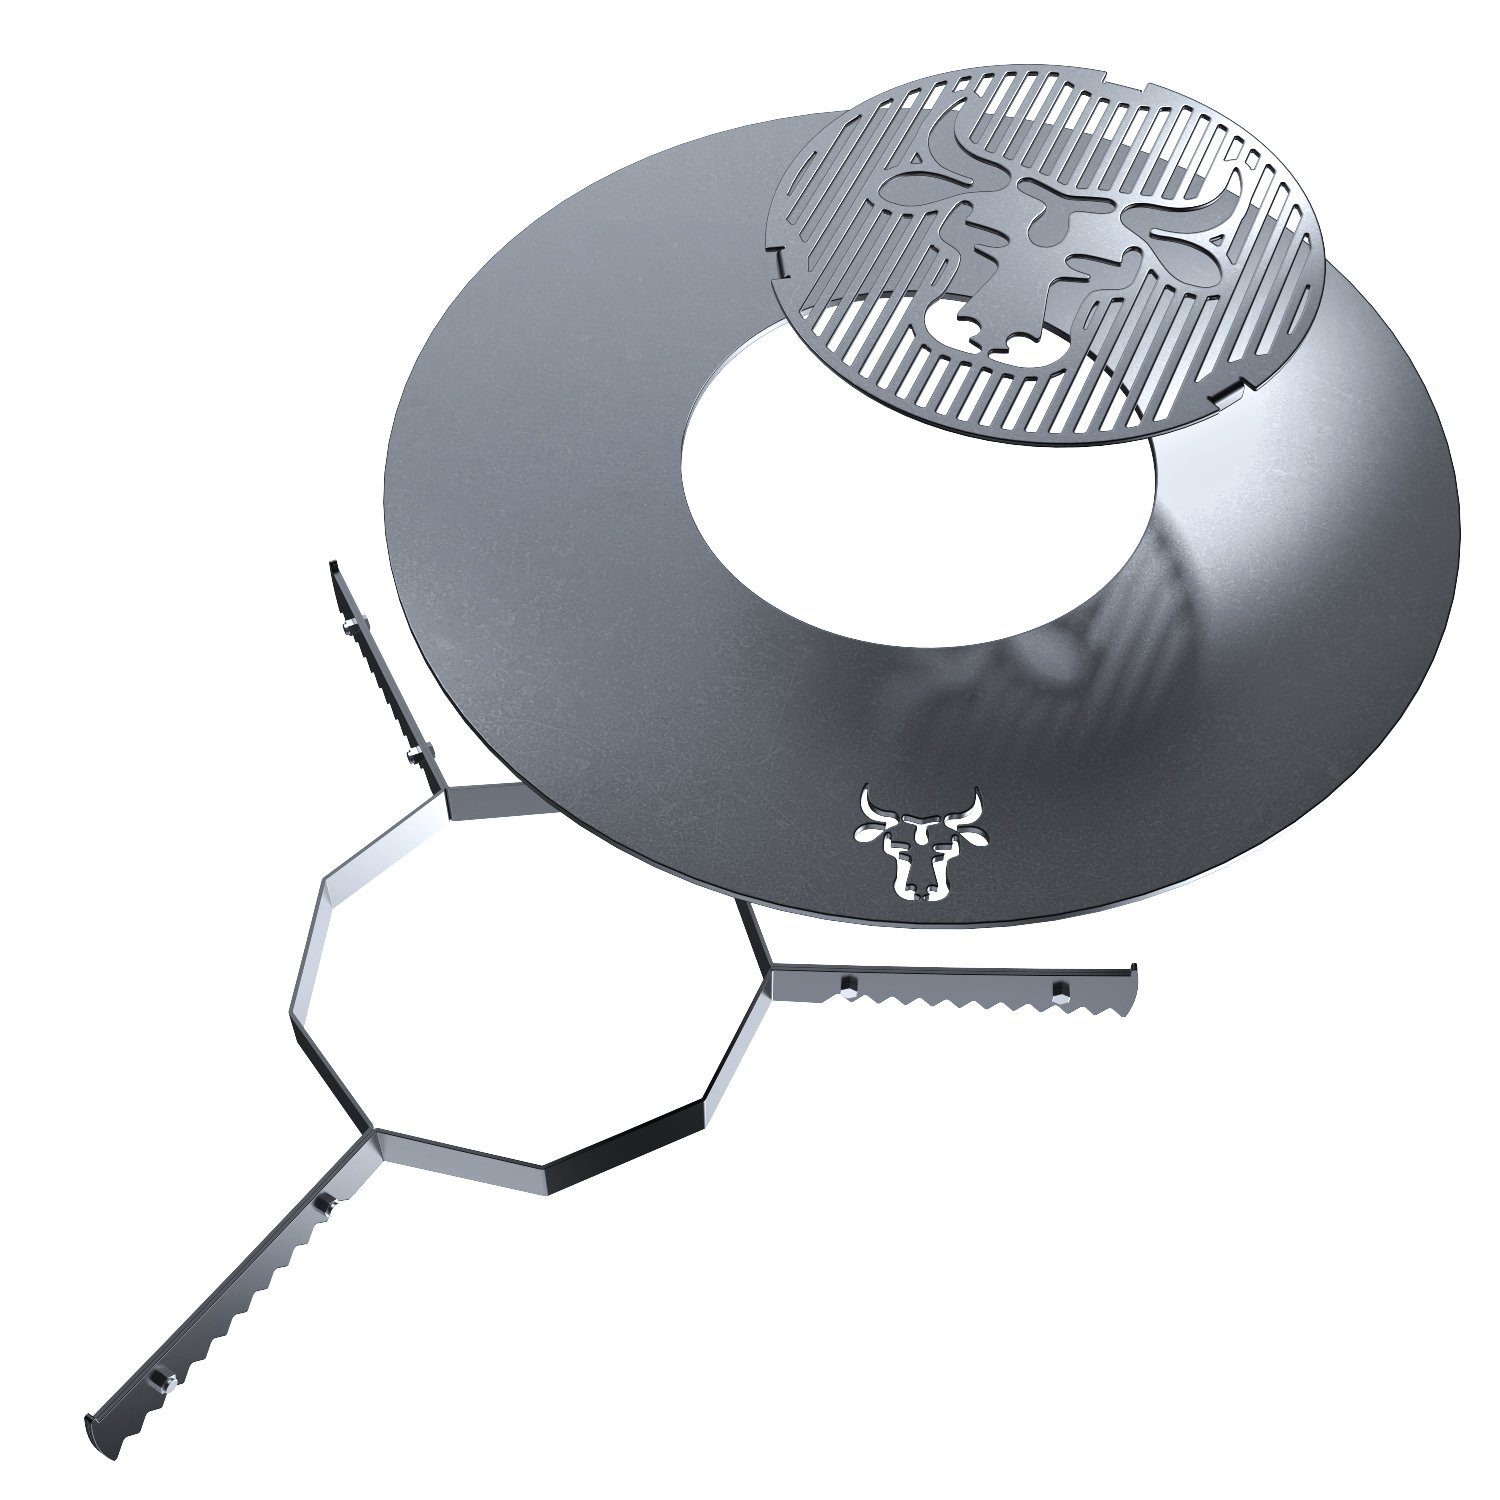 Grillplatte Grilleinsatz Grillring GR07-80 tuning-art + Kugelgrill Auflageleiste + Set für